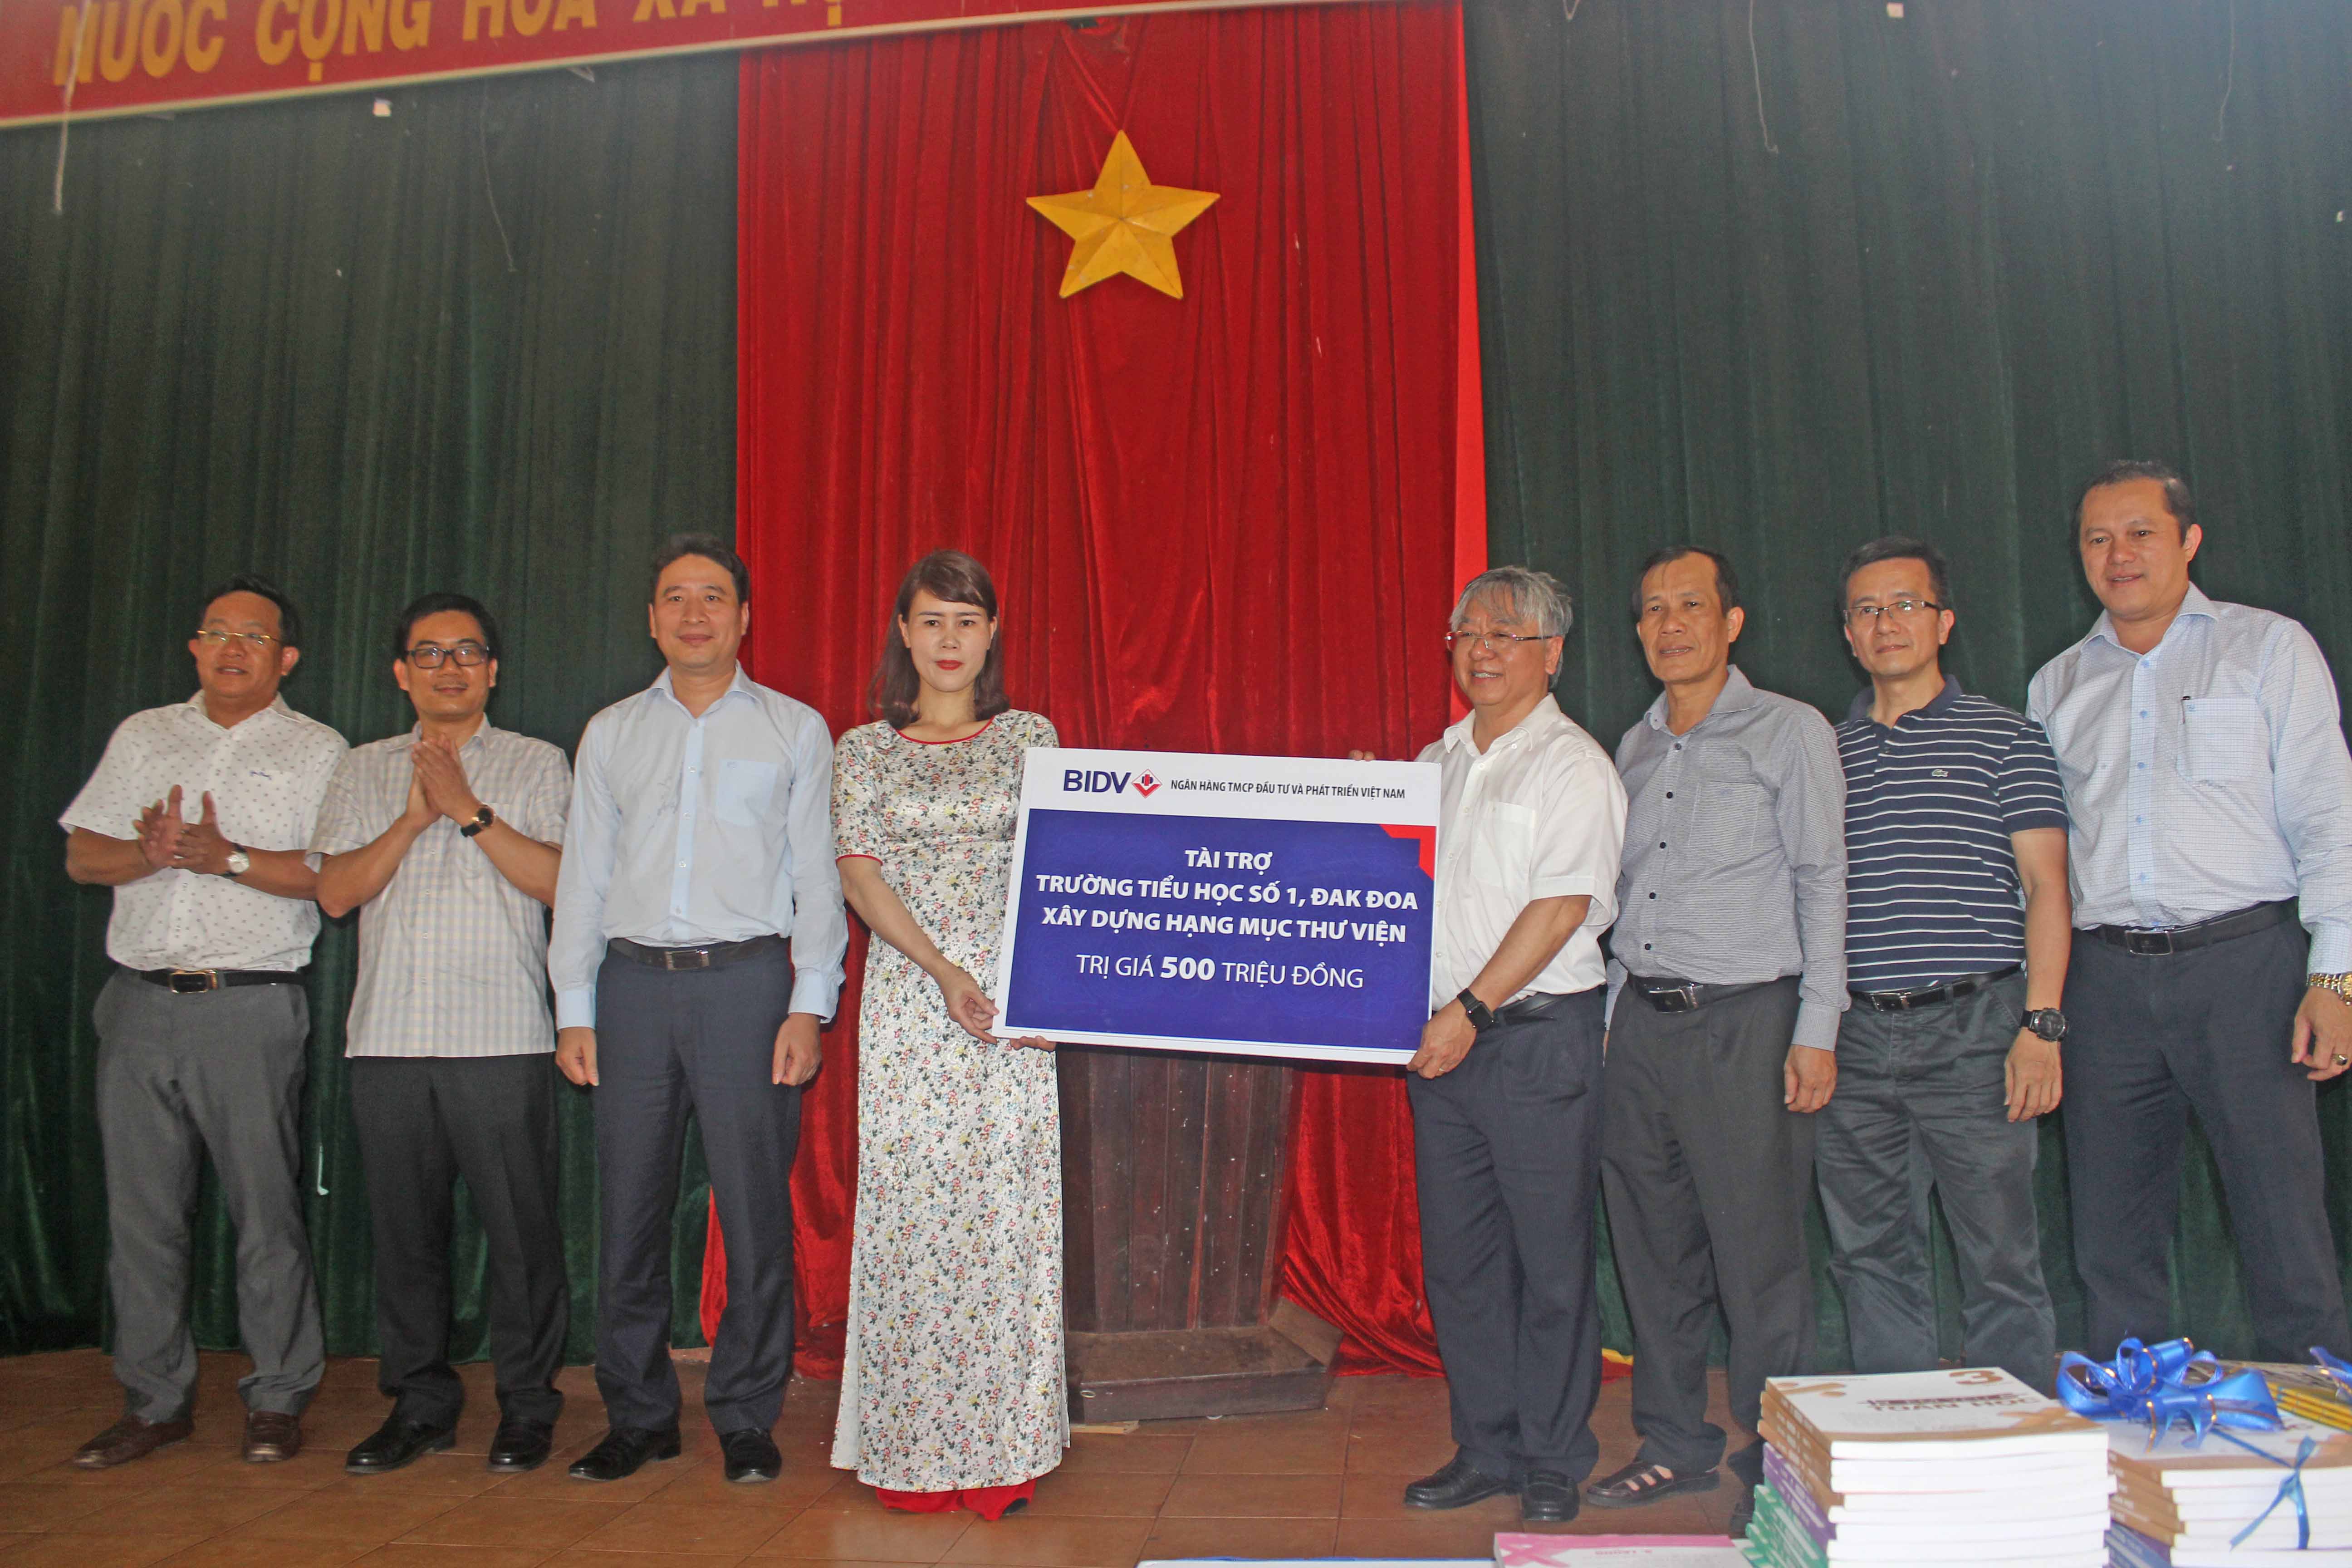 BIDV trao tặng 500 triệu đồng để xây dựng thư viện cho Trường tiểu học số 1 thị trấn Đak Đoa, huyện Đak Đoa